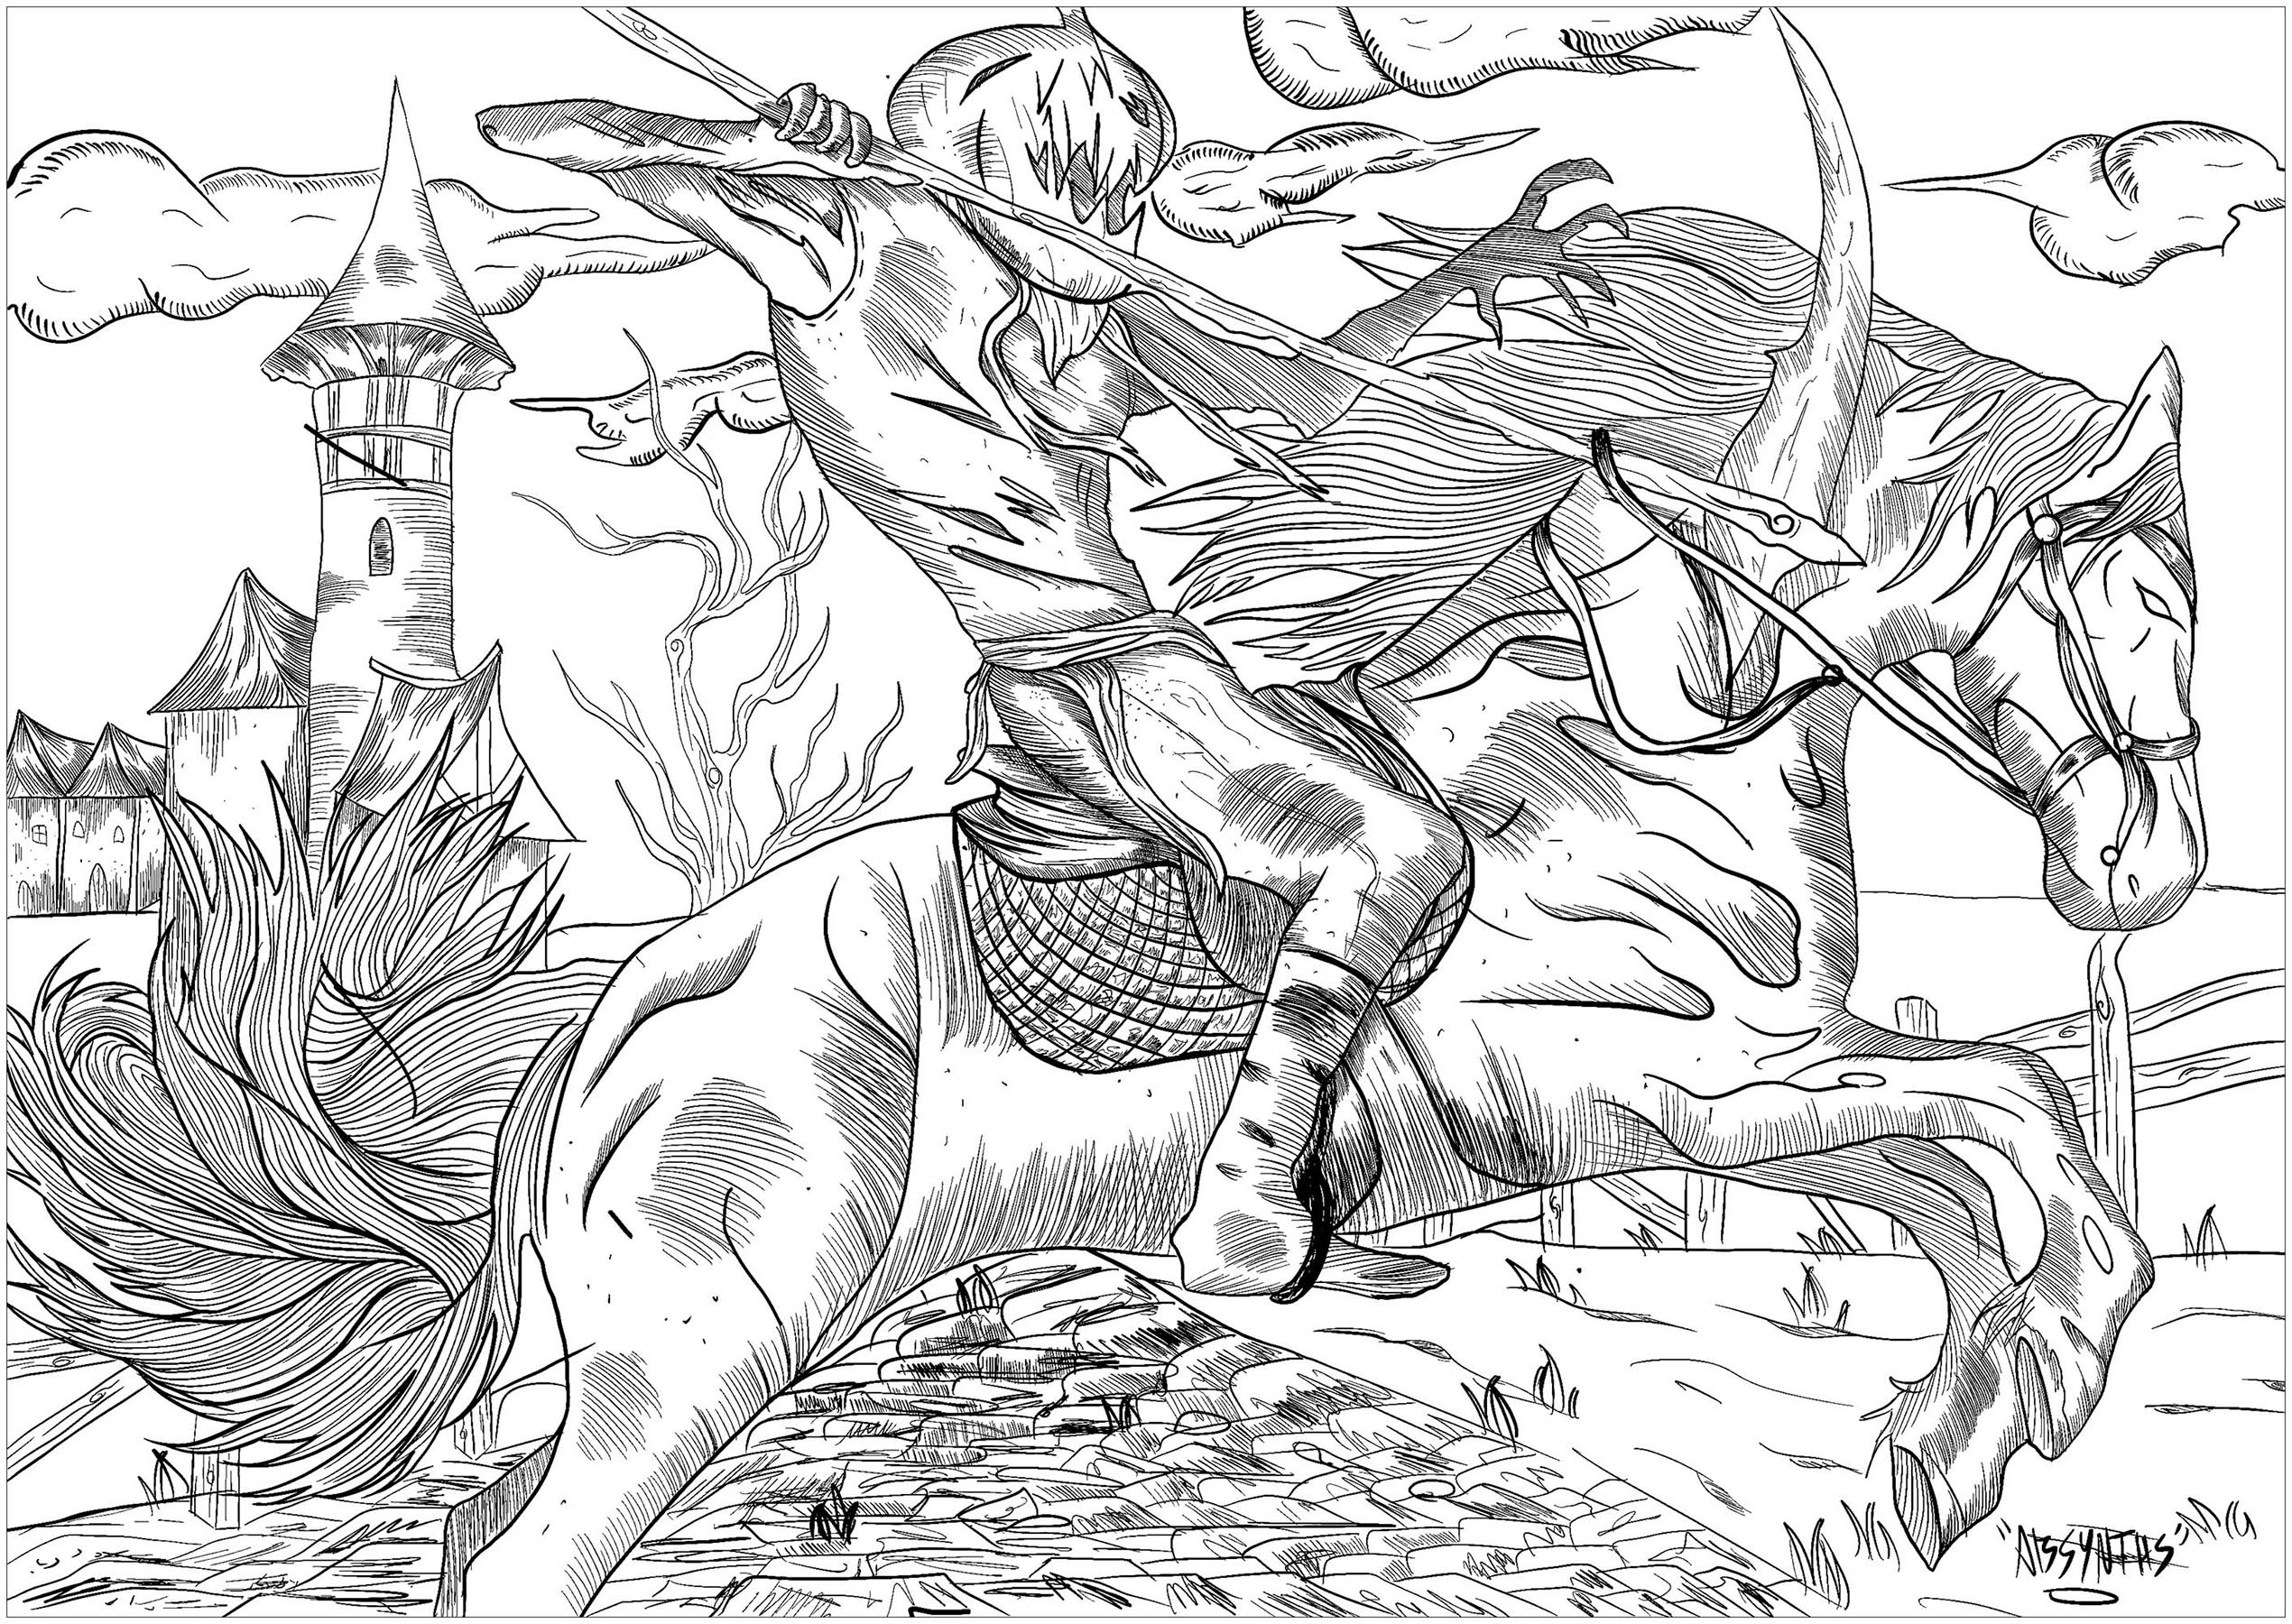 Un cavaliere malvagio con la testa di pumkin, in sella al suo cavallo fantasma... Un vero incubo da colorare!